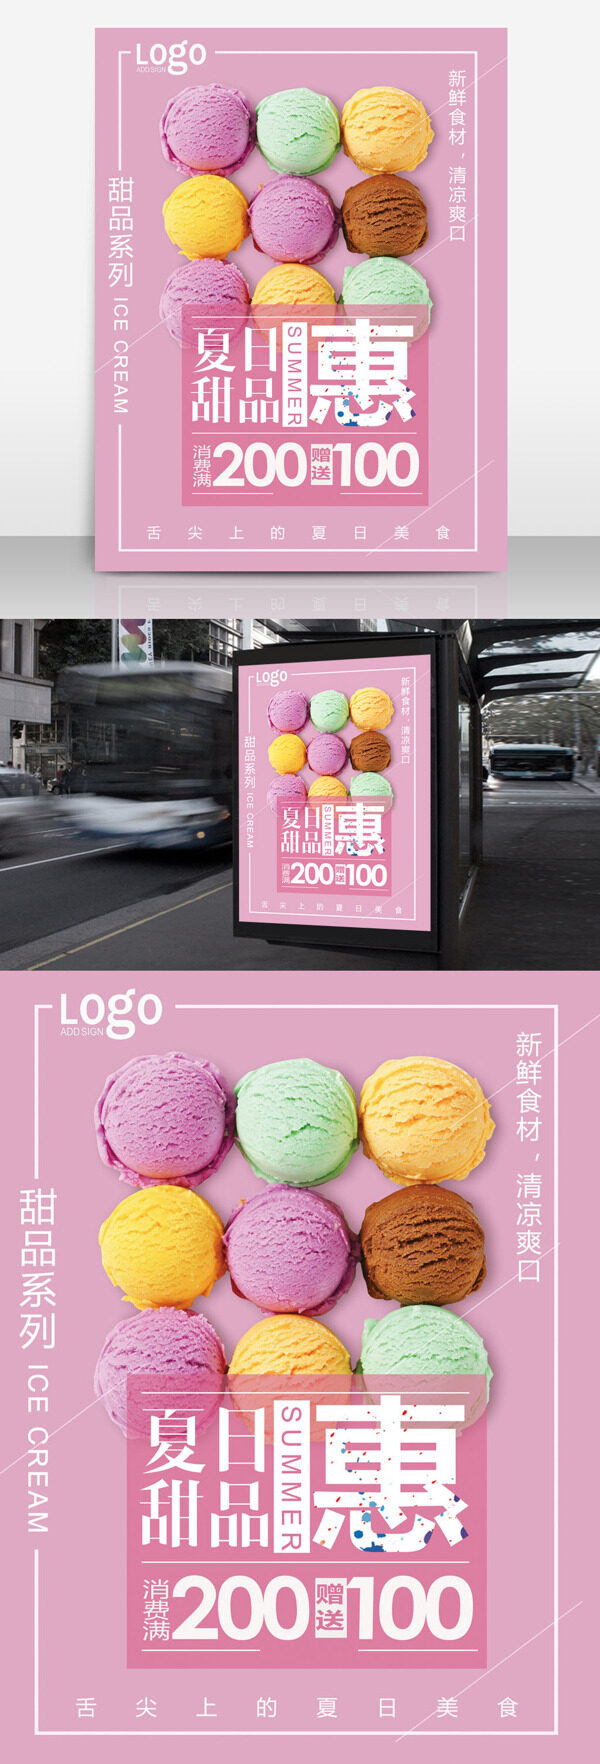 冰淇淋促销海报夏日甜品海报马卡龙色冰淇淋